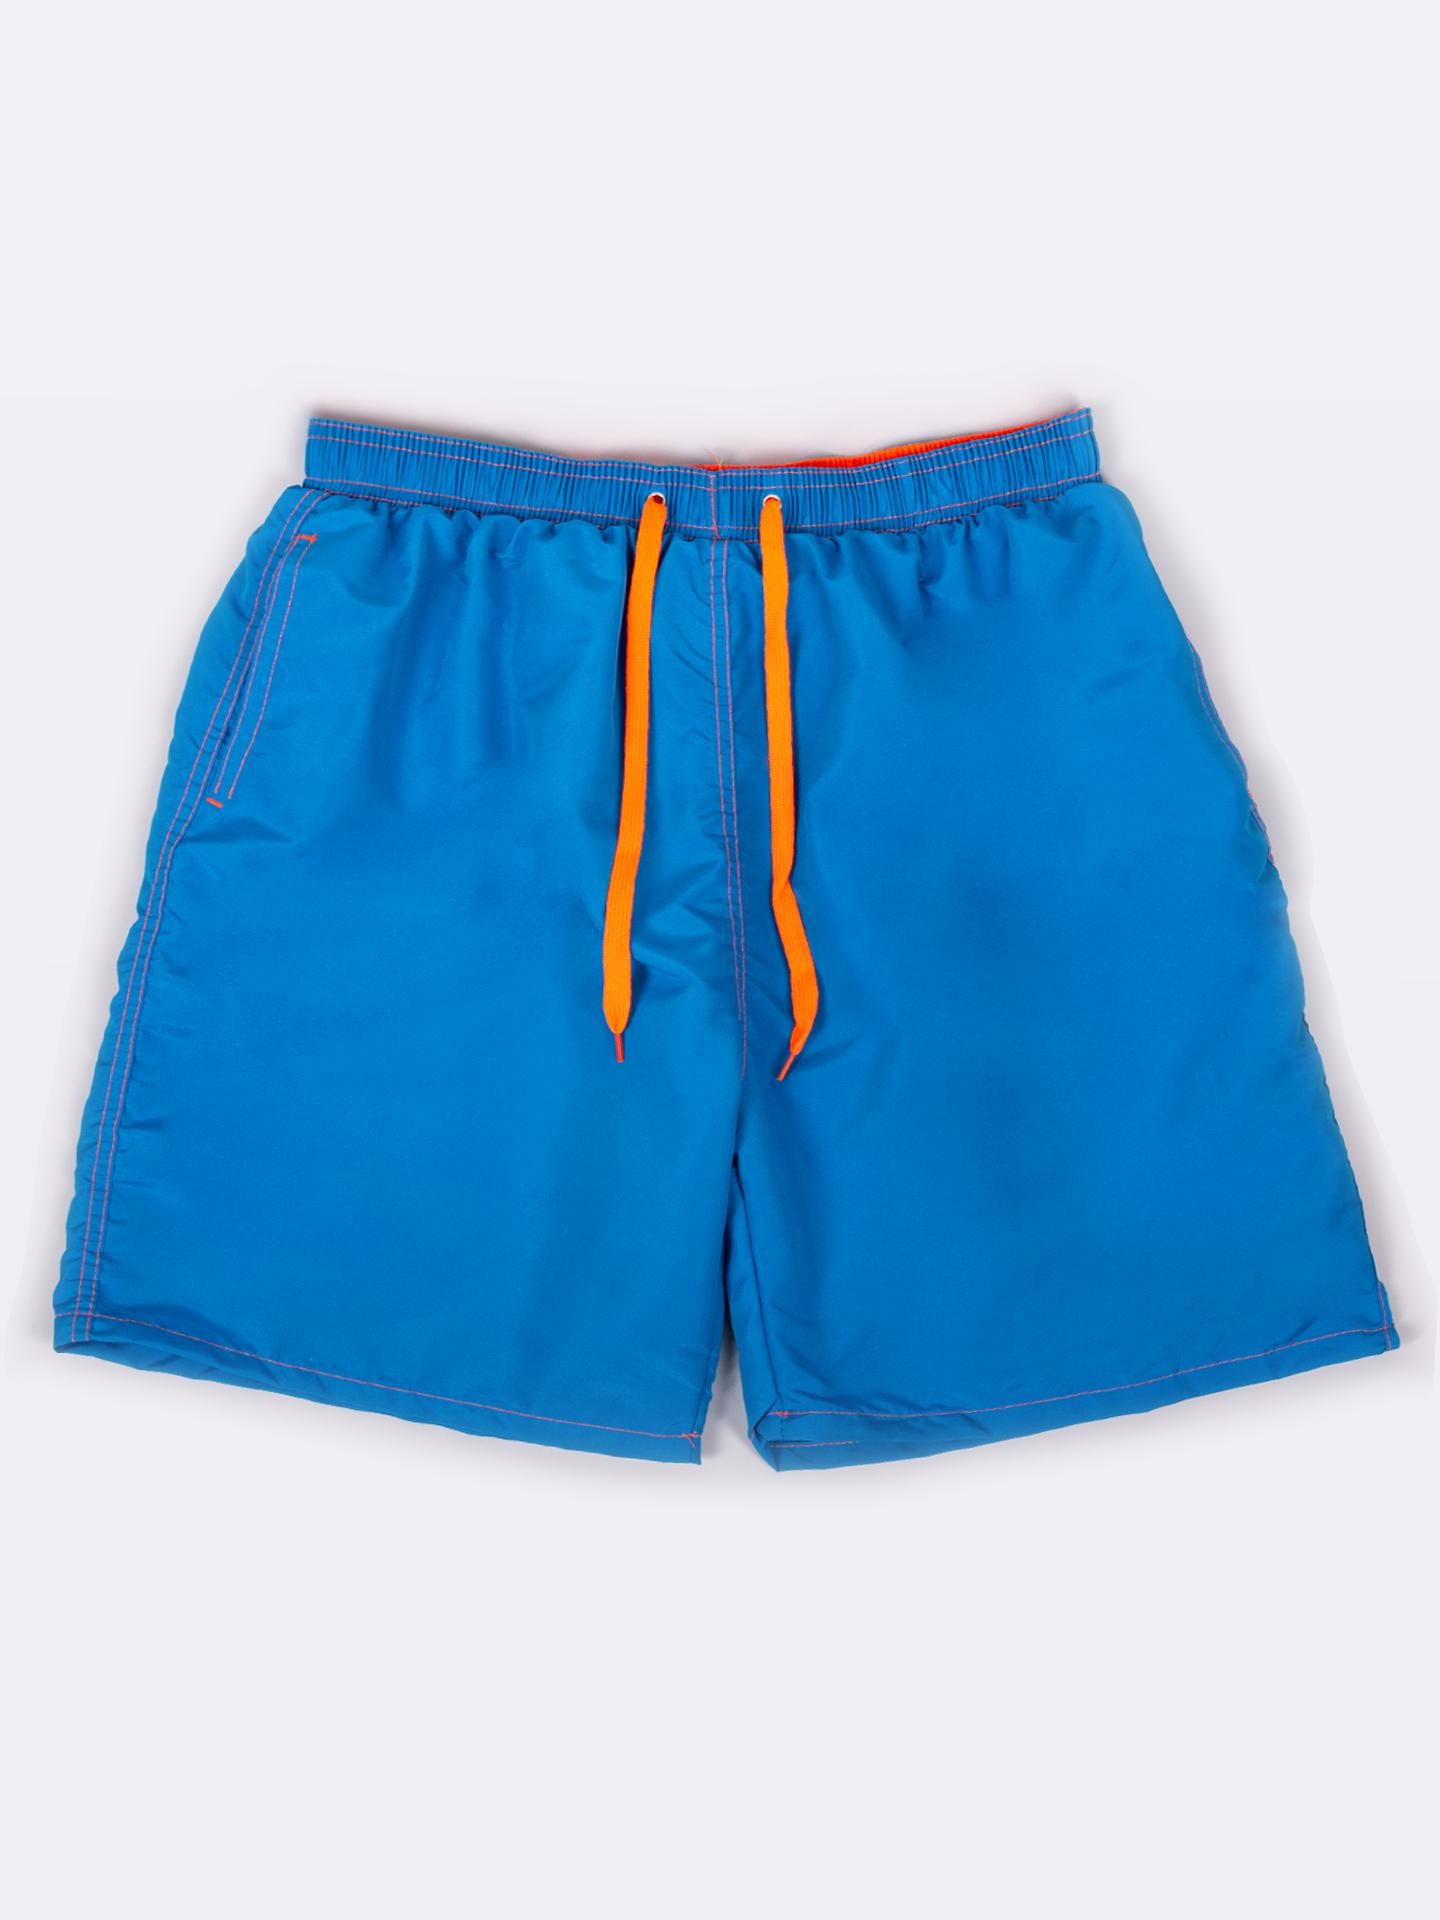 Yoclub Man's Men's Beach Shorts LKS-0061F-A100